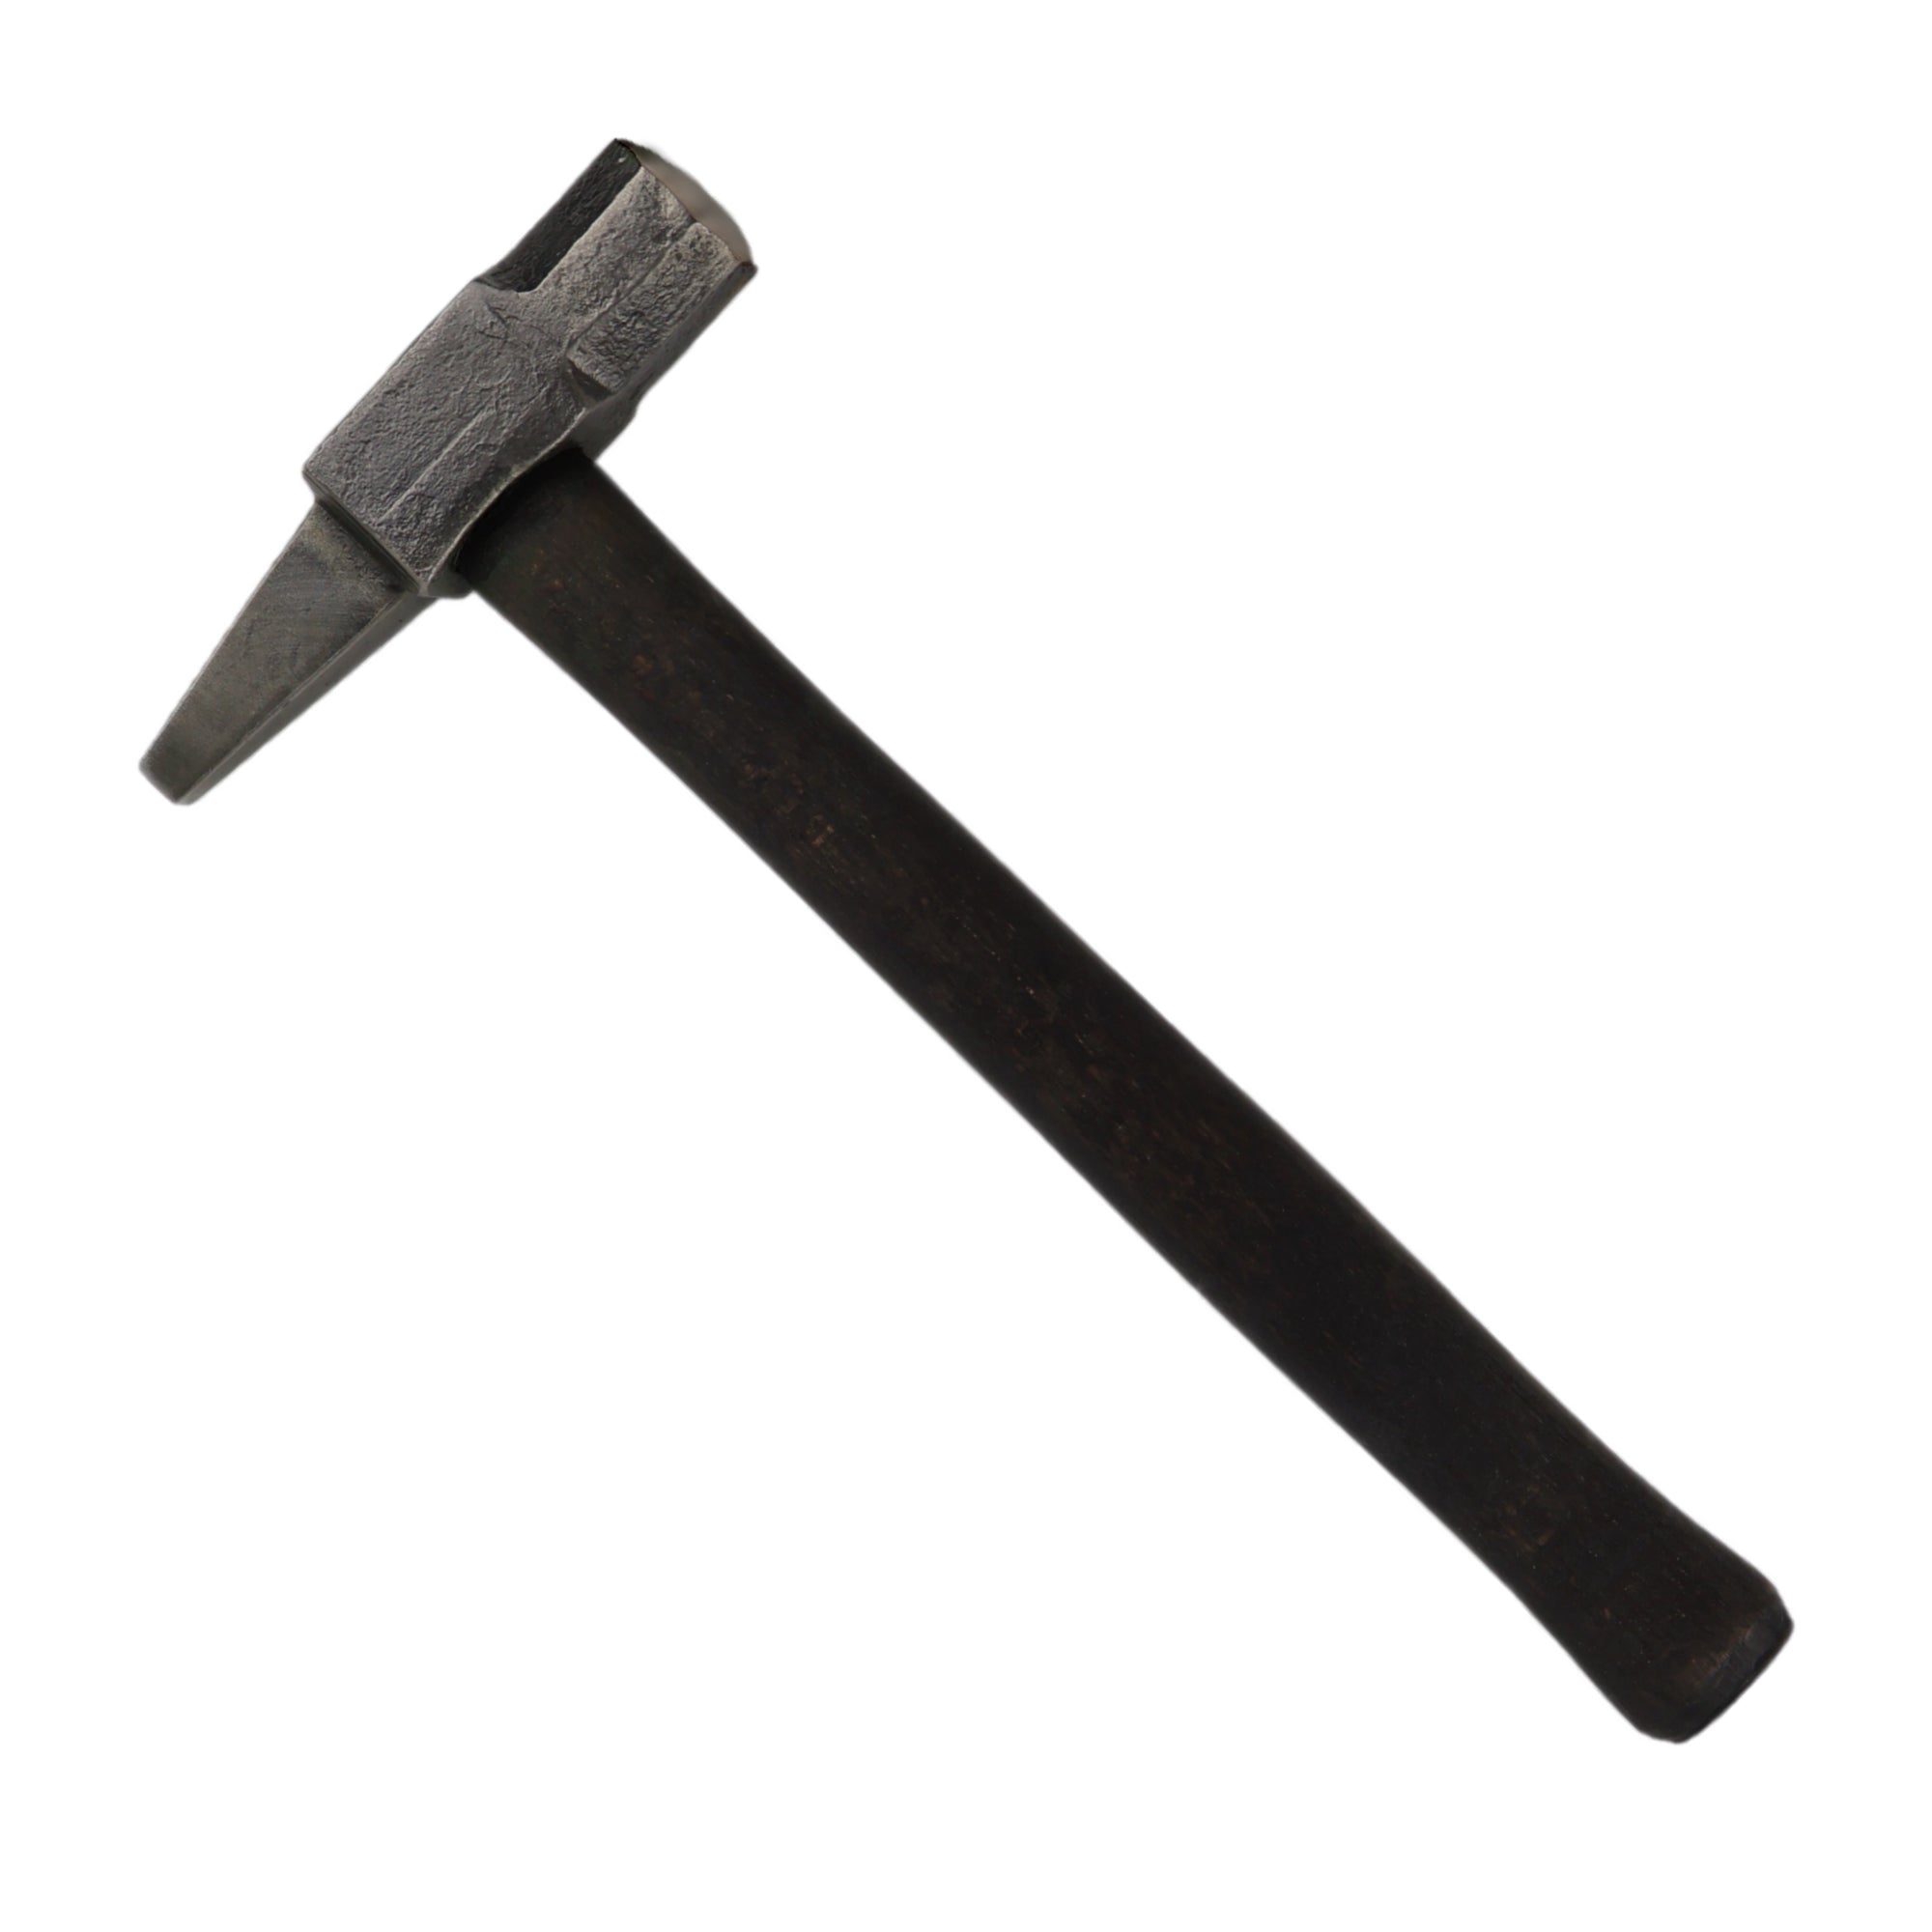 Hot Cut Hammer for blacksmithing